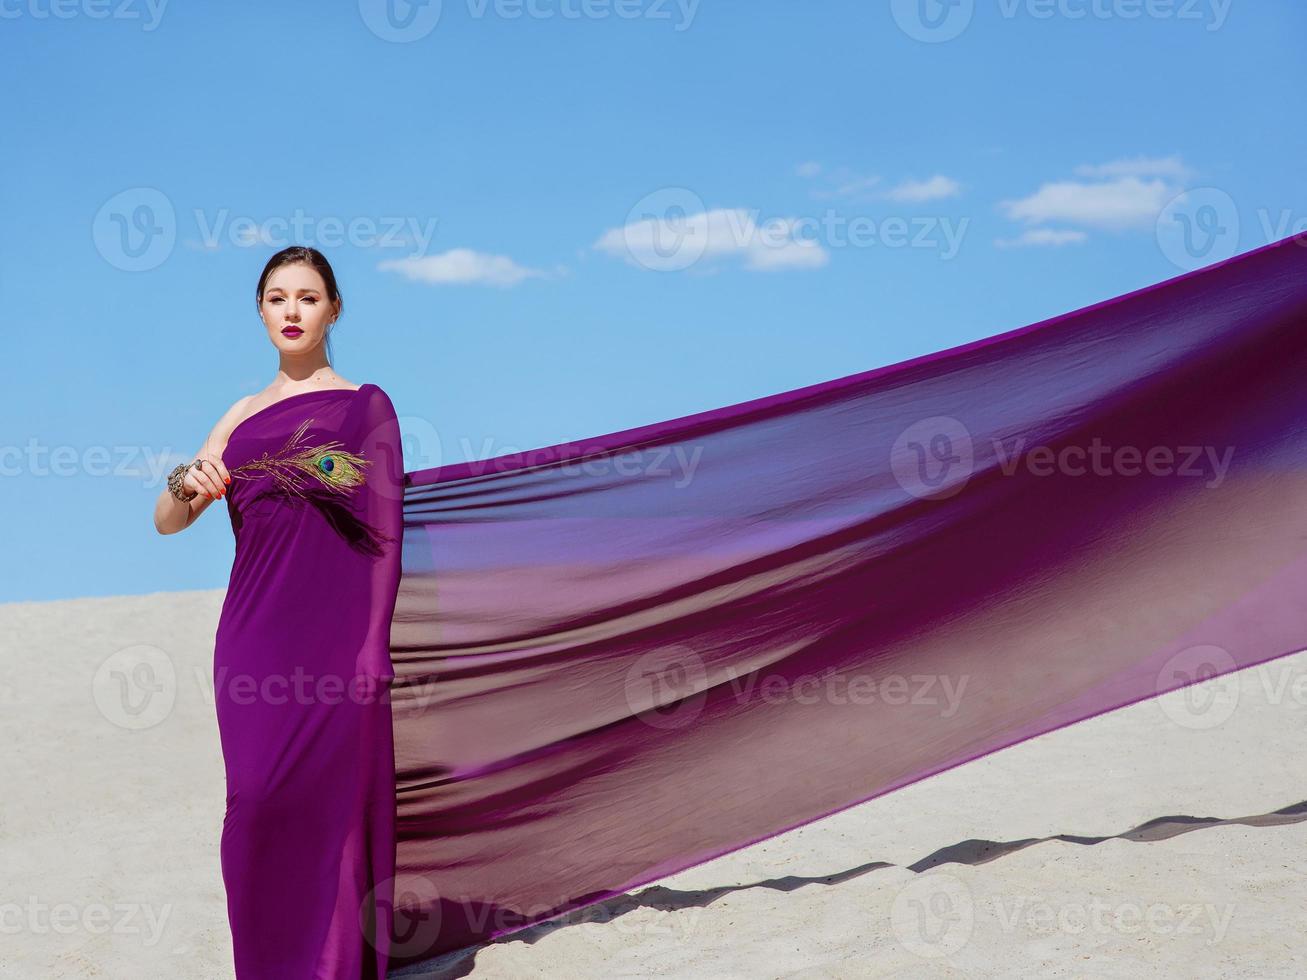 geweldige mooie brunette vrouw met de pauwenveer in paarse stof in de woestijn. oosters, indisch, mode, stijlconcept foto